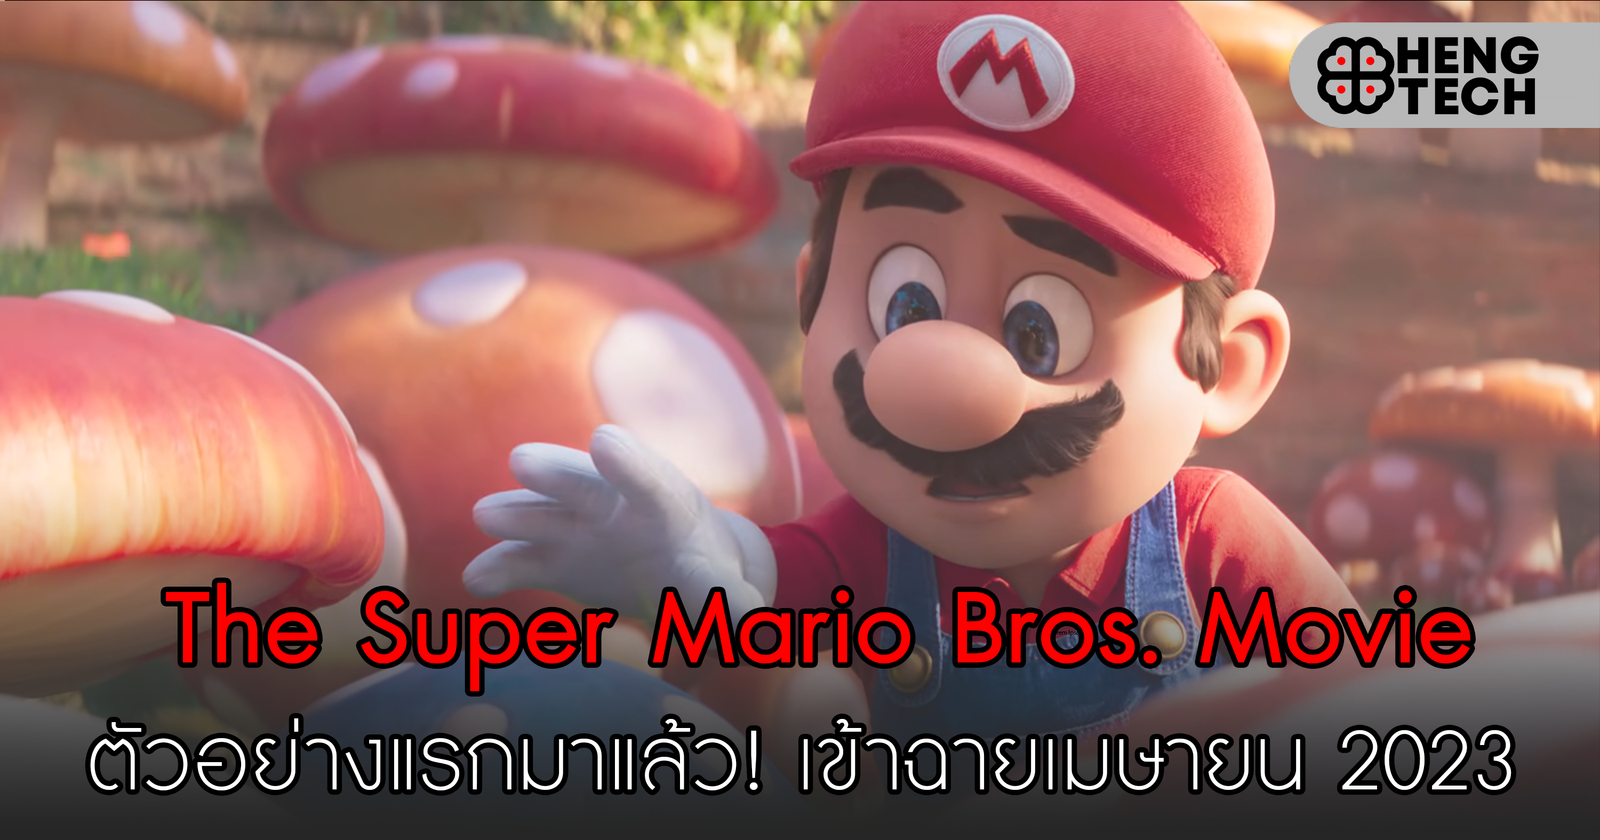 The Super Mario Bros. Movie ตัวอย่างแรกมาแล้ว! เข้าฉายเมษายน 2023